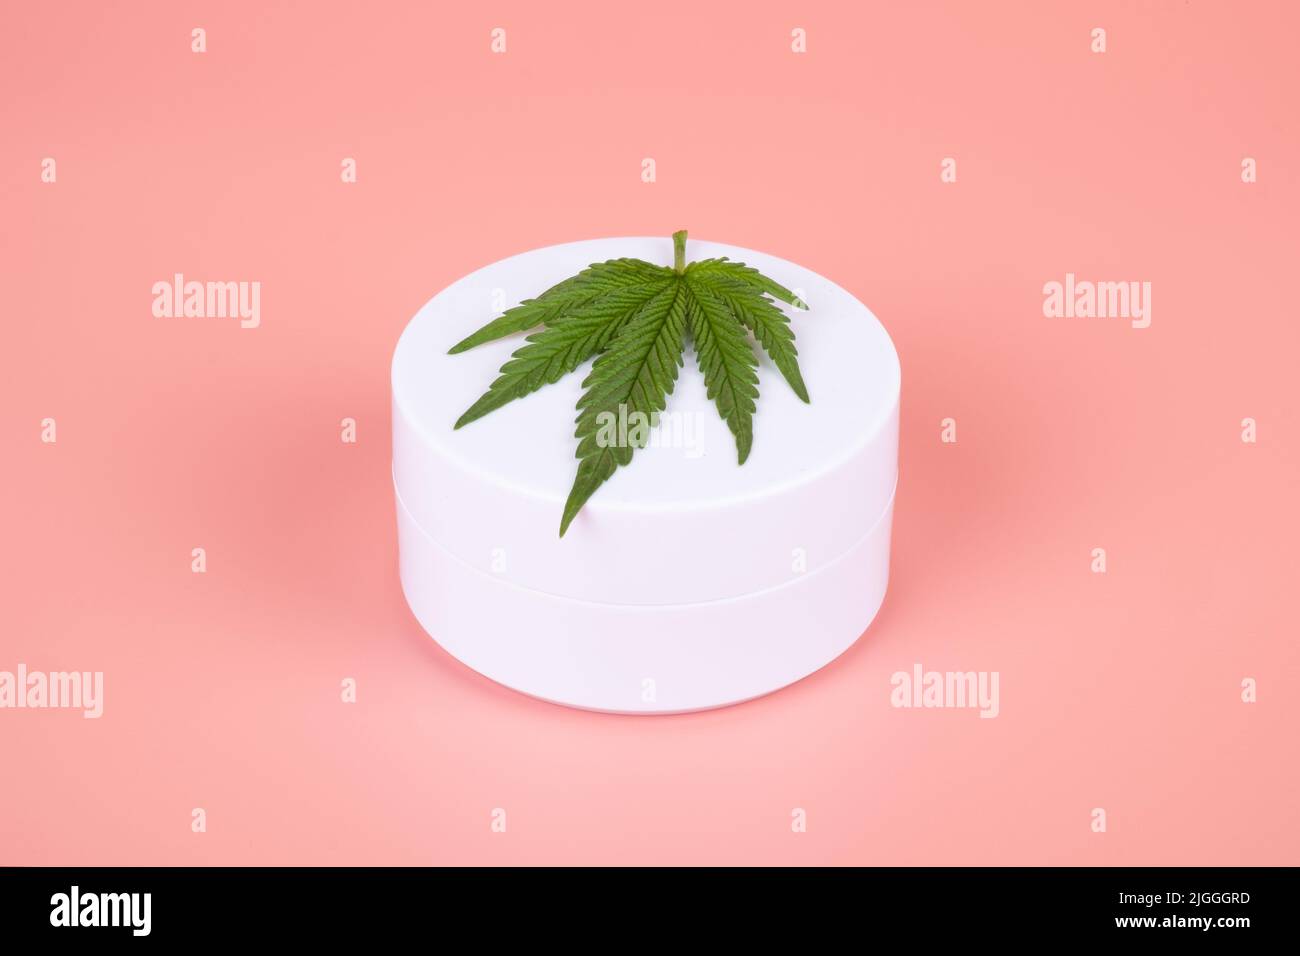 Les cosmétiques naturels de la marijuana cannabis , crème et vert feuille sur la beauté fond rose. Banque D'Images